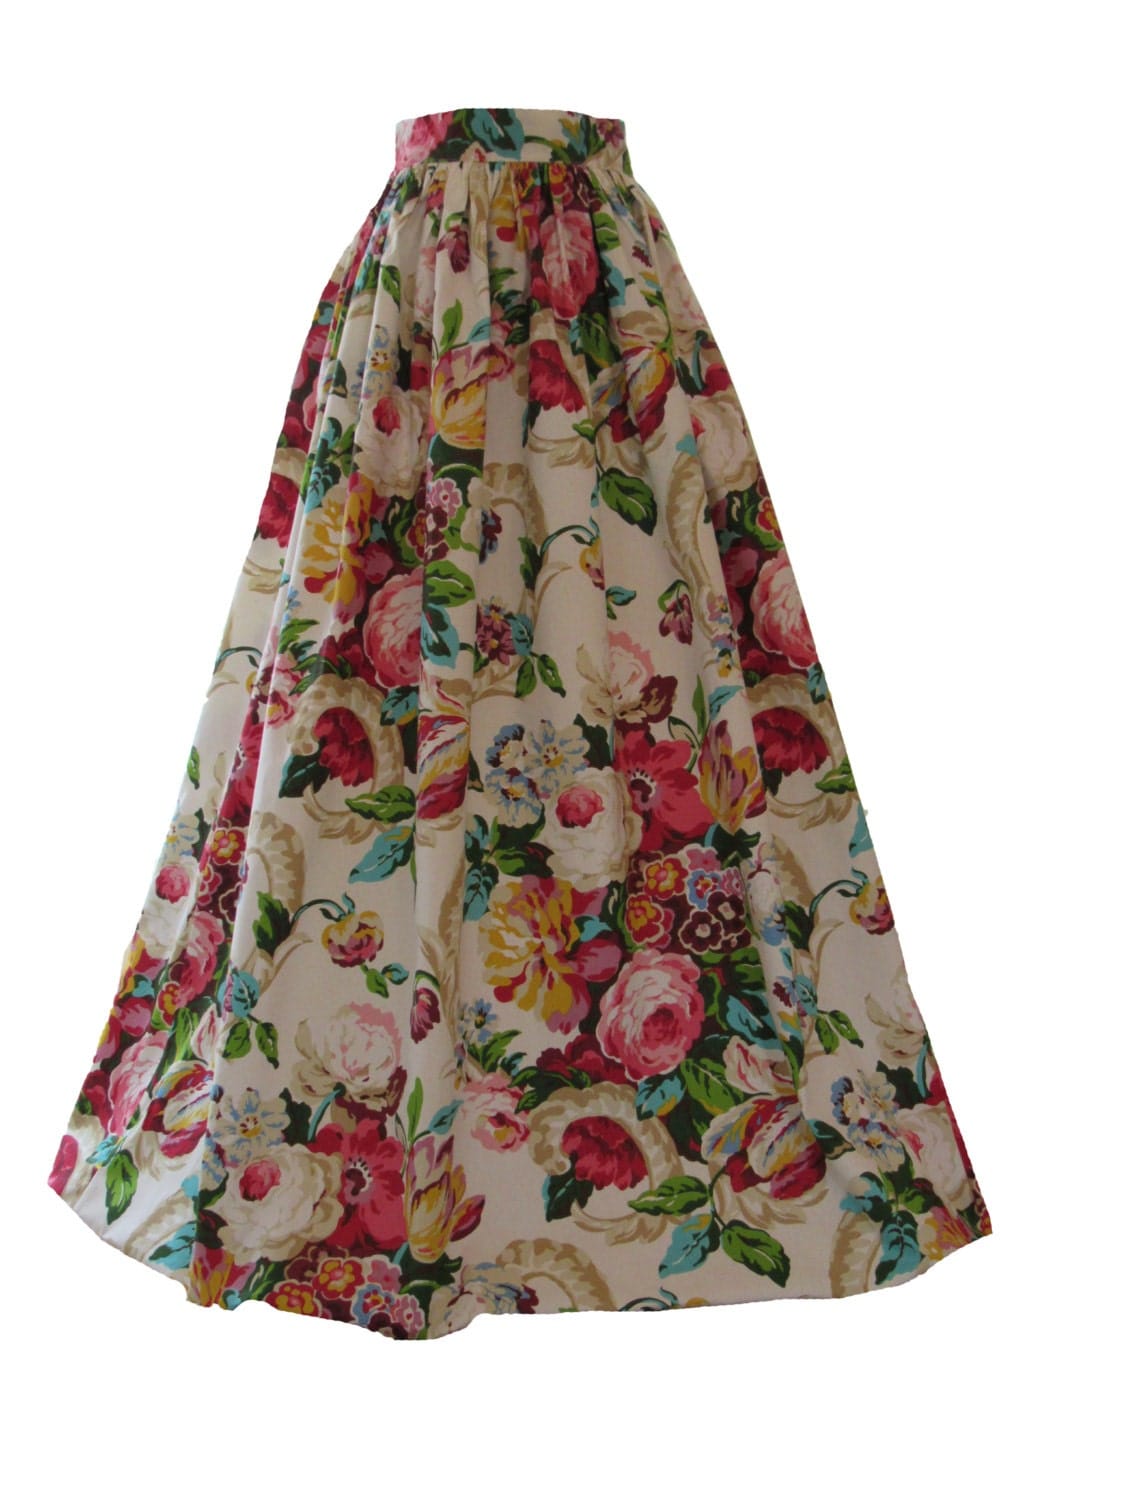 Floral Maxi Ball skirt Midi Skirt Mini Skirt or full